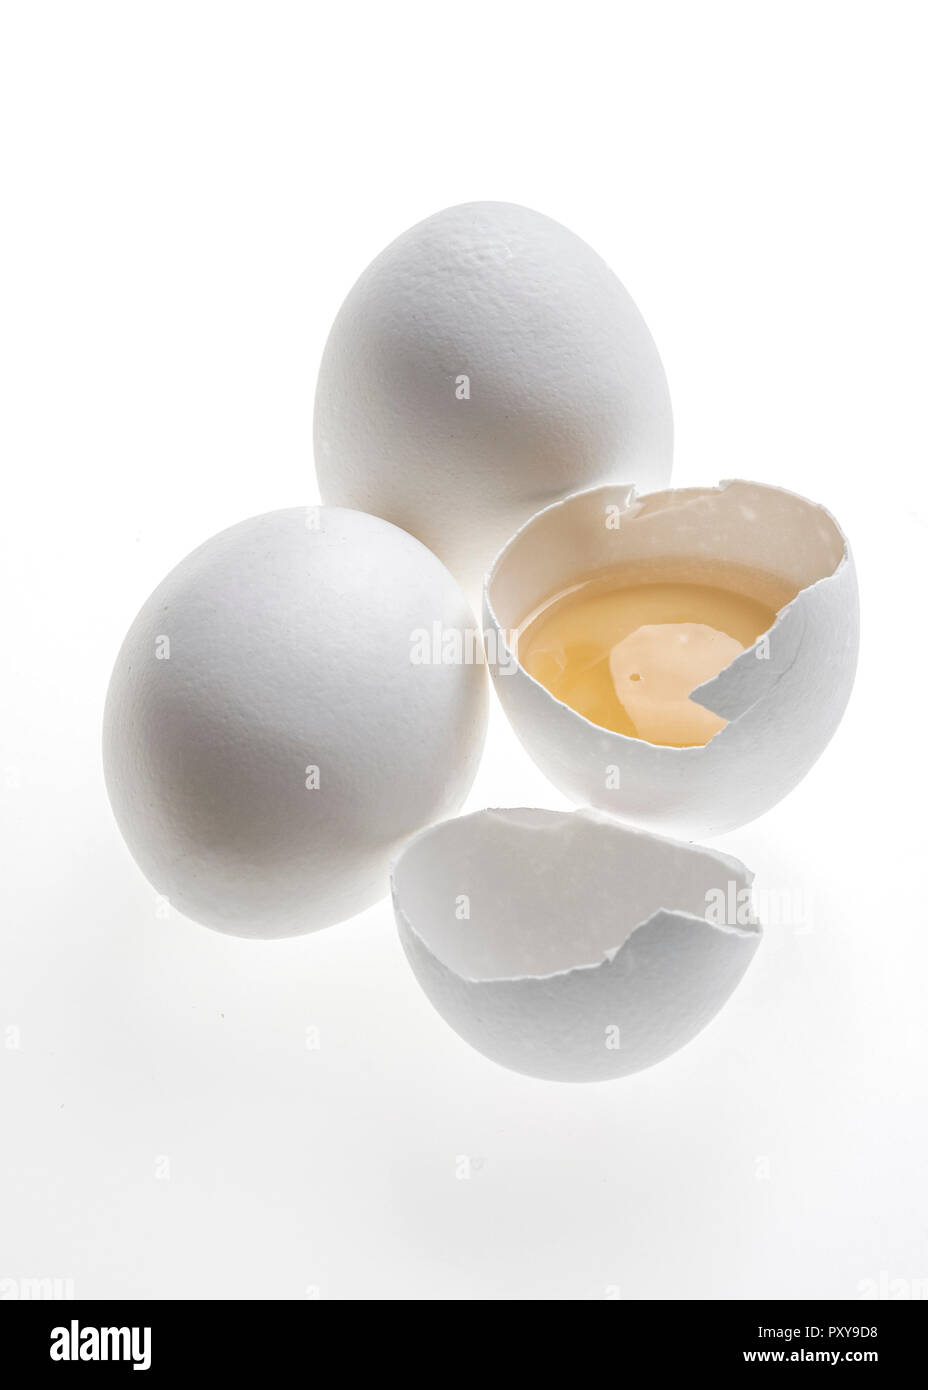 Drei Eier, eines davon aufgeschlagen Stock Photo